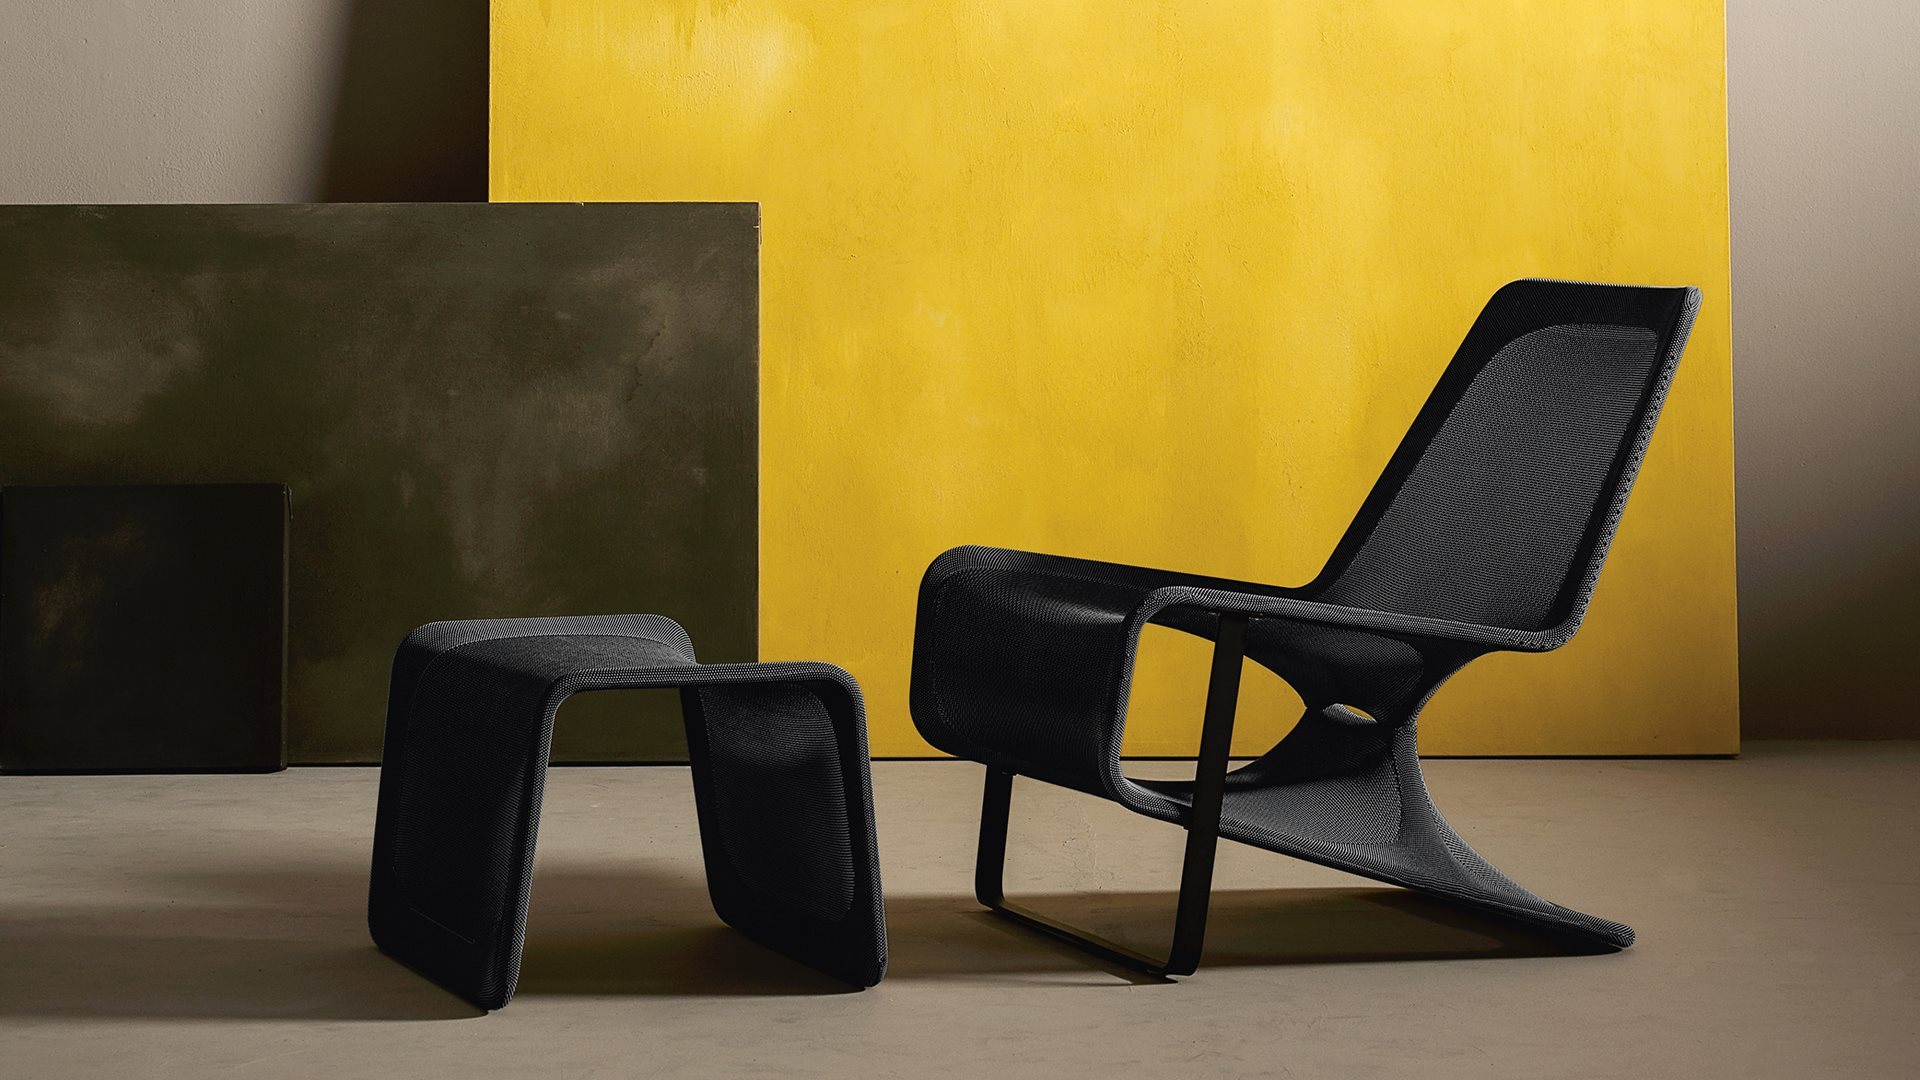 意大利家具desalto的Aria 休闲椅 主图